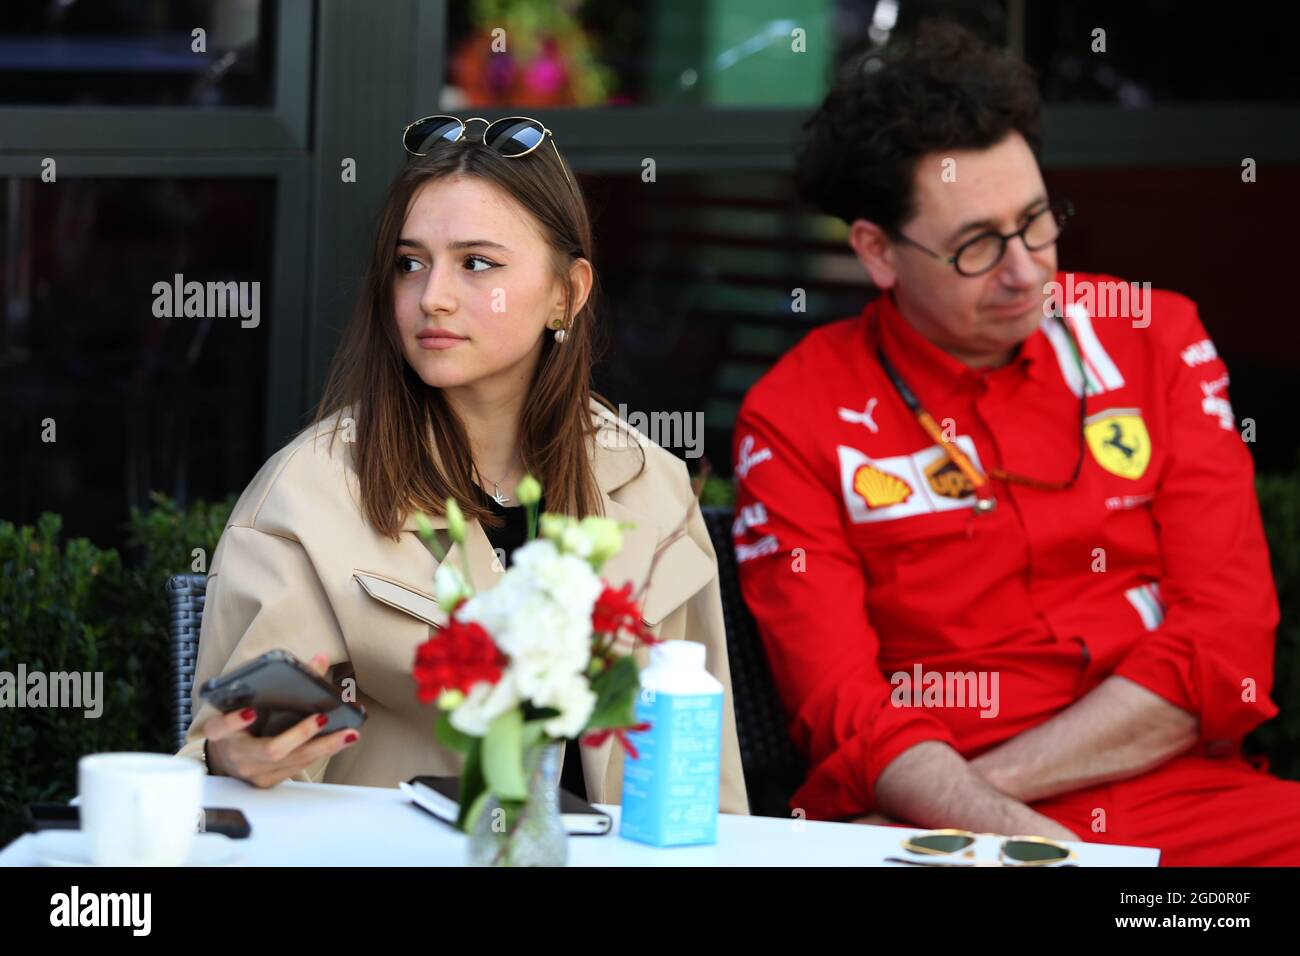 Charlotte sine (mon), petite amie de Charles Leclerc (mon) Ferrari. Grand Prix d'Australie, jeudi 12 mars 2020. Albert Park, Melbourne, Australie. Banque D'Images